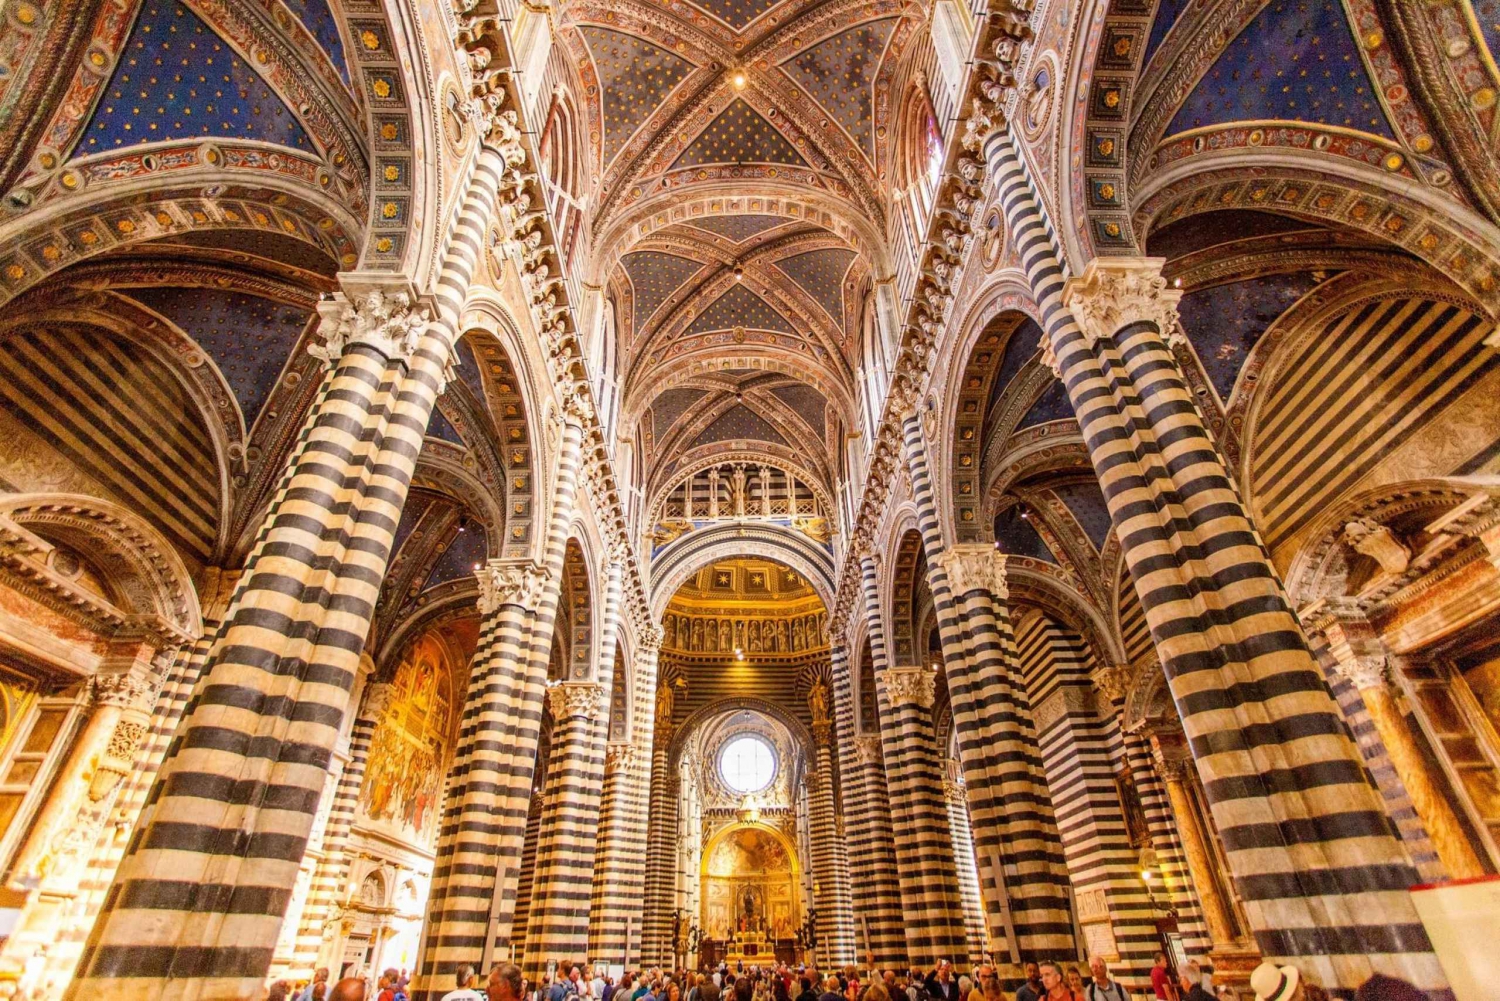 From Florence: Siena, San Gimignano & Monteriggioni Tour